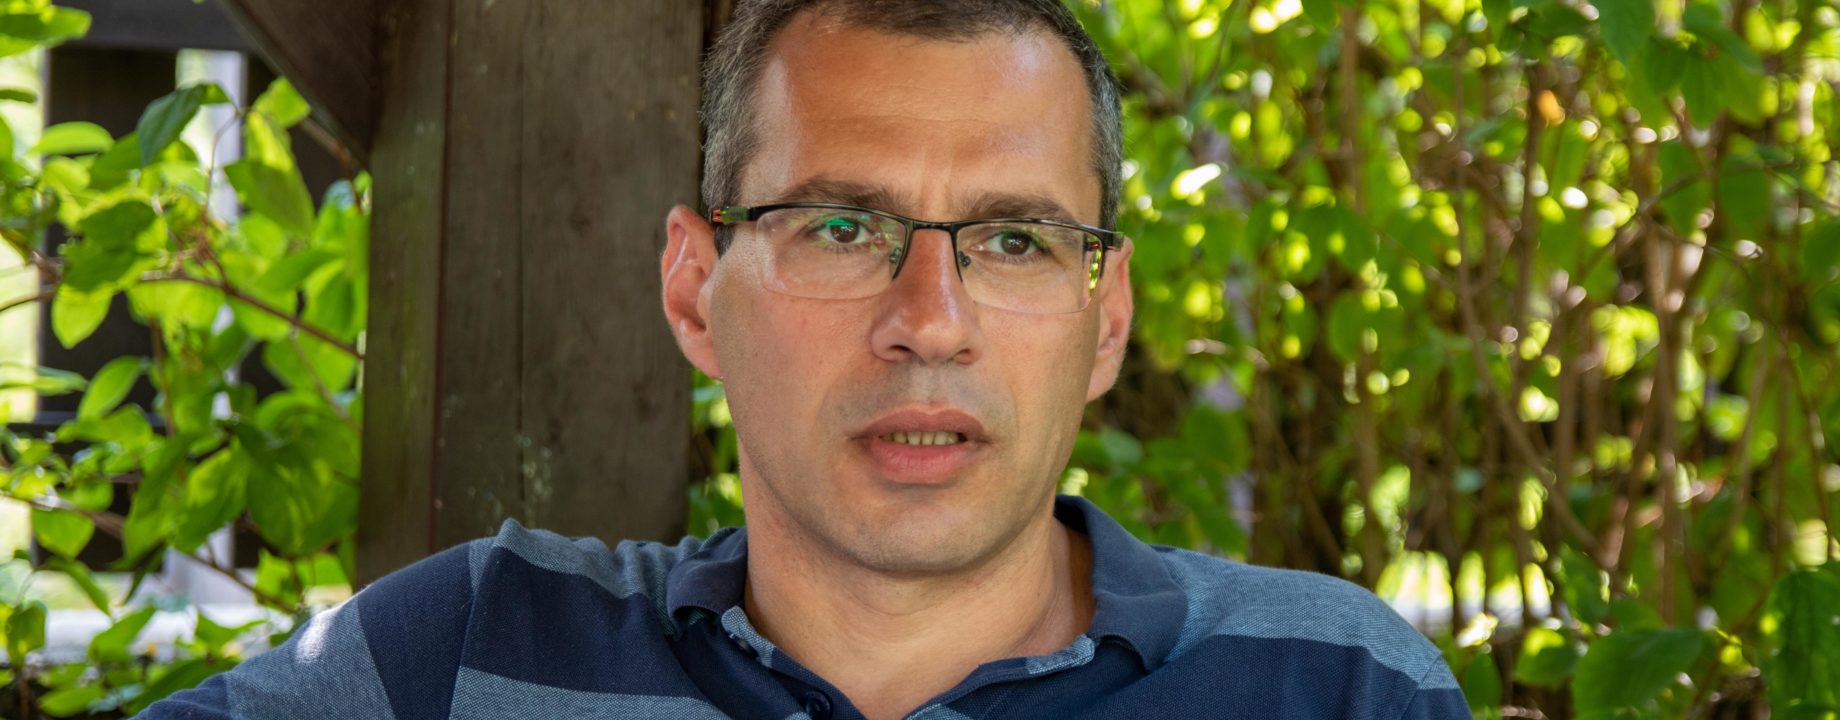 Jacek karnowski salföld